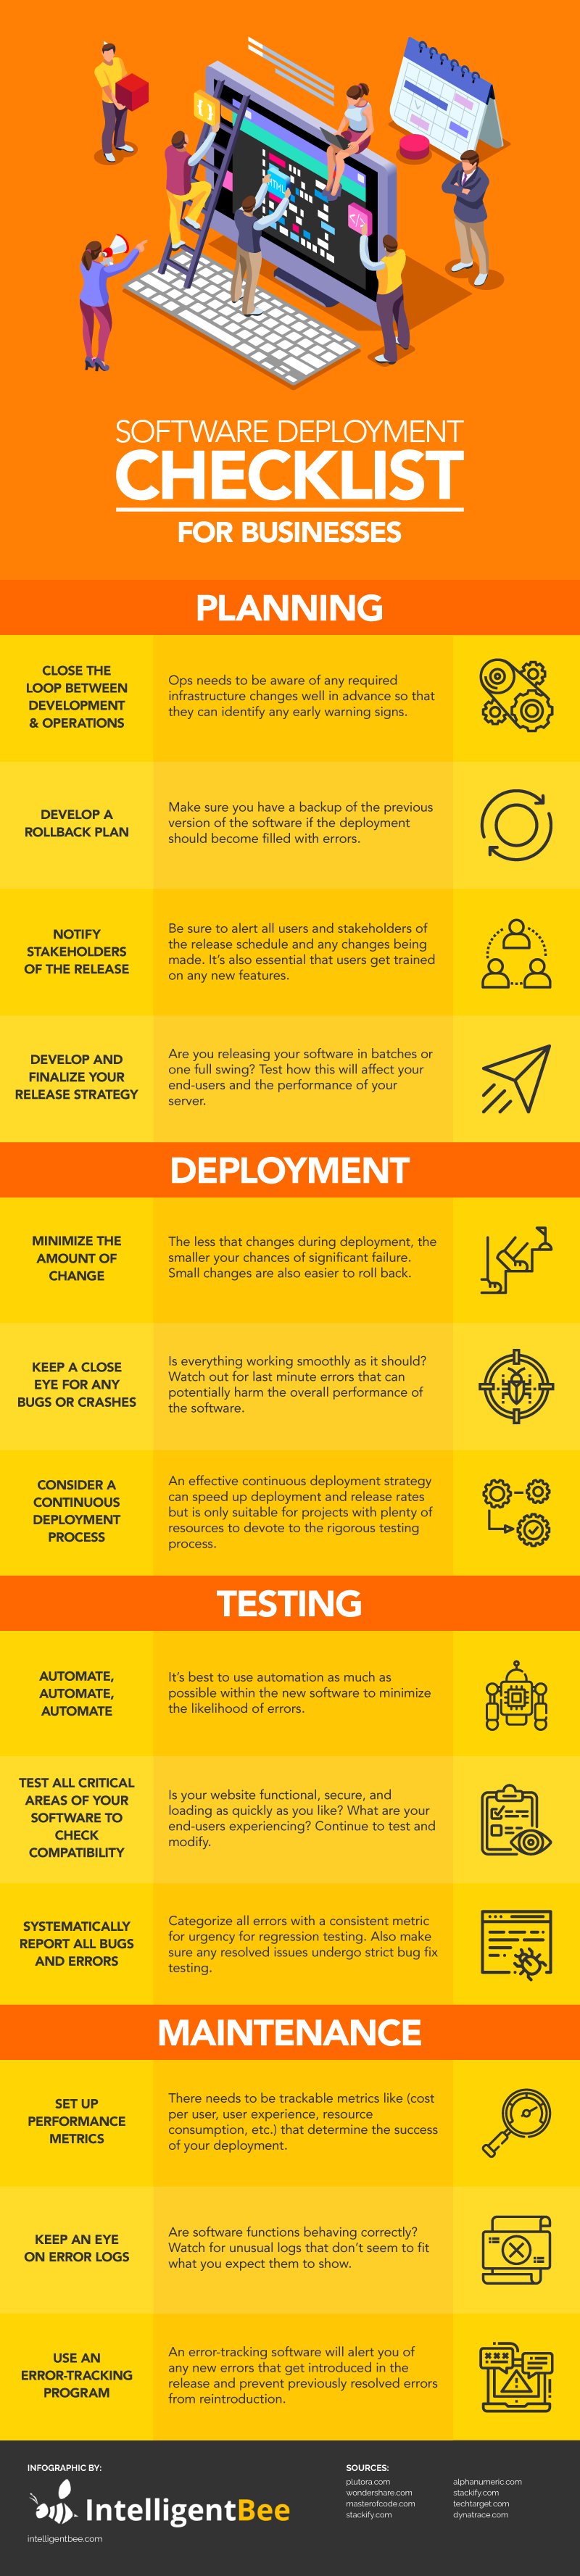 Software-Deployment-Checklist-Infographic-plaza